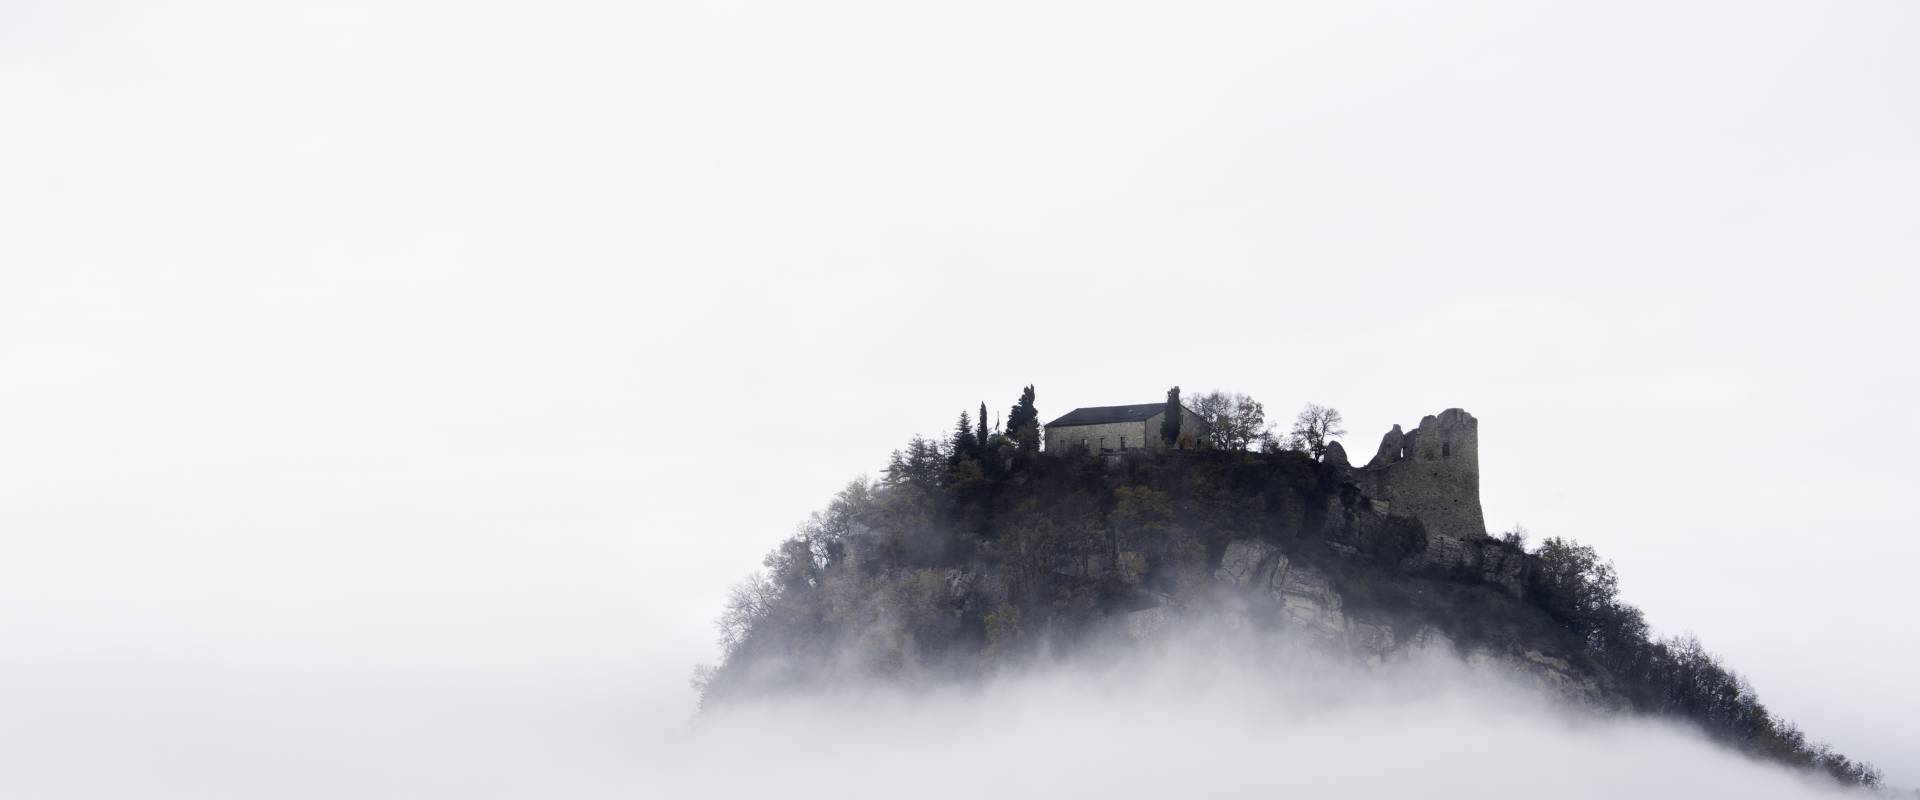 Il Castello Sospeso foto di Marcocattani